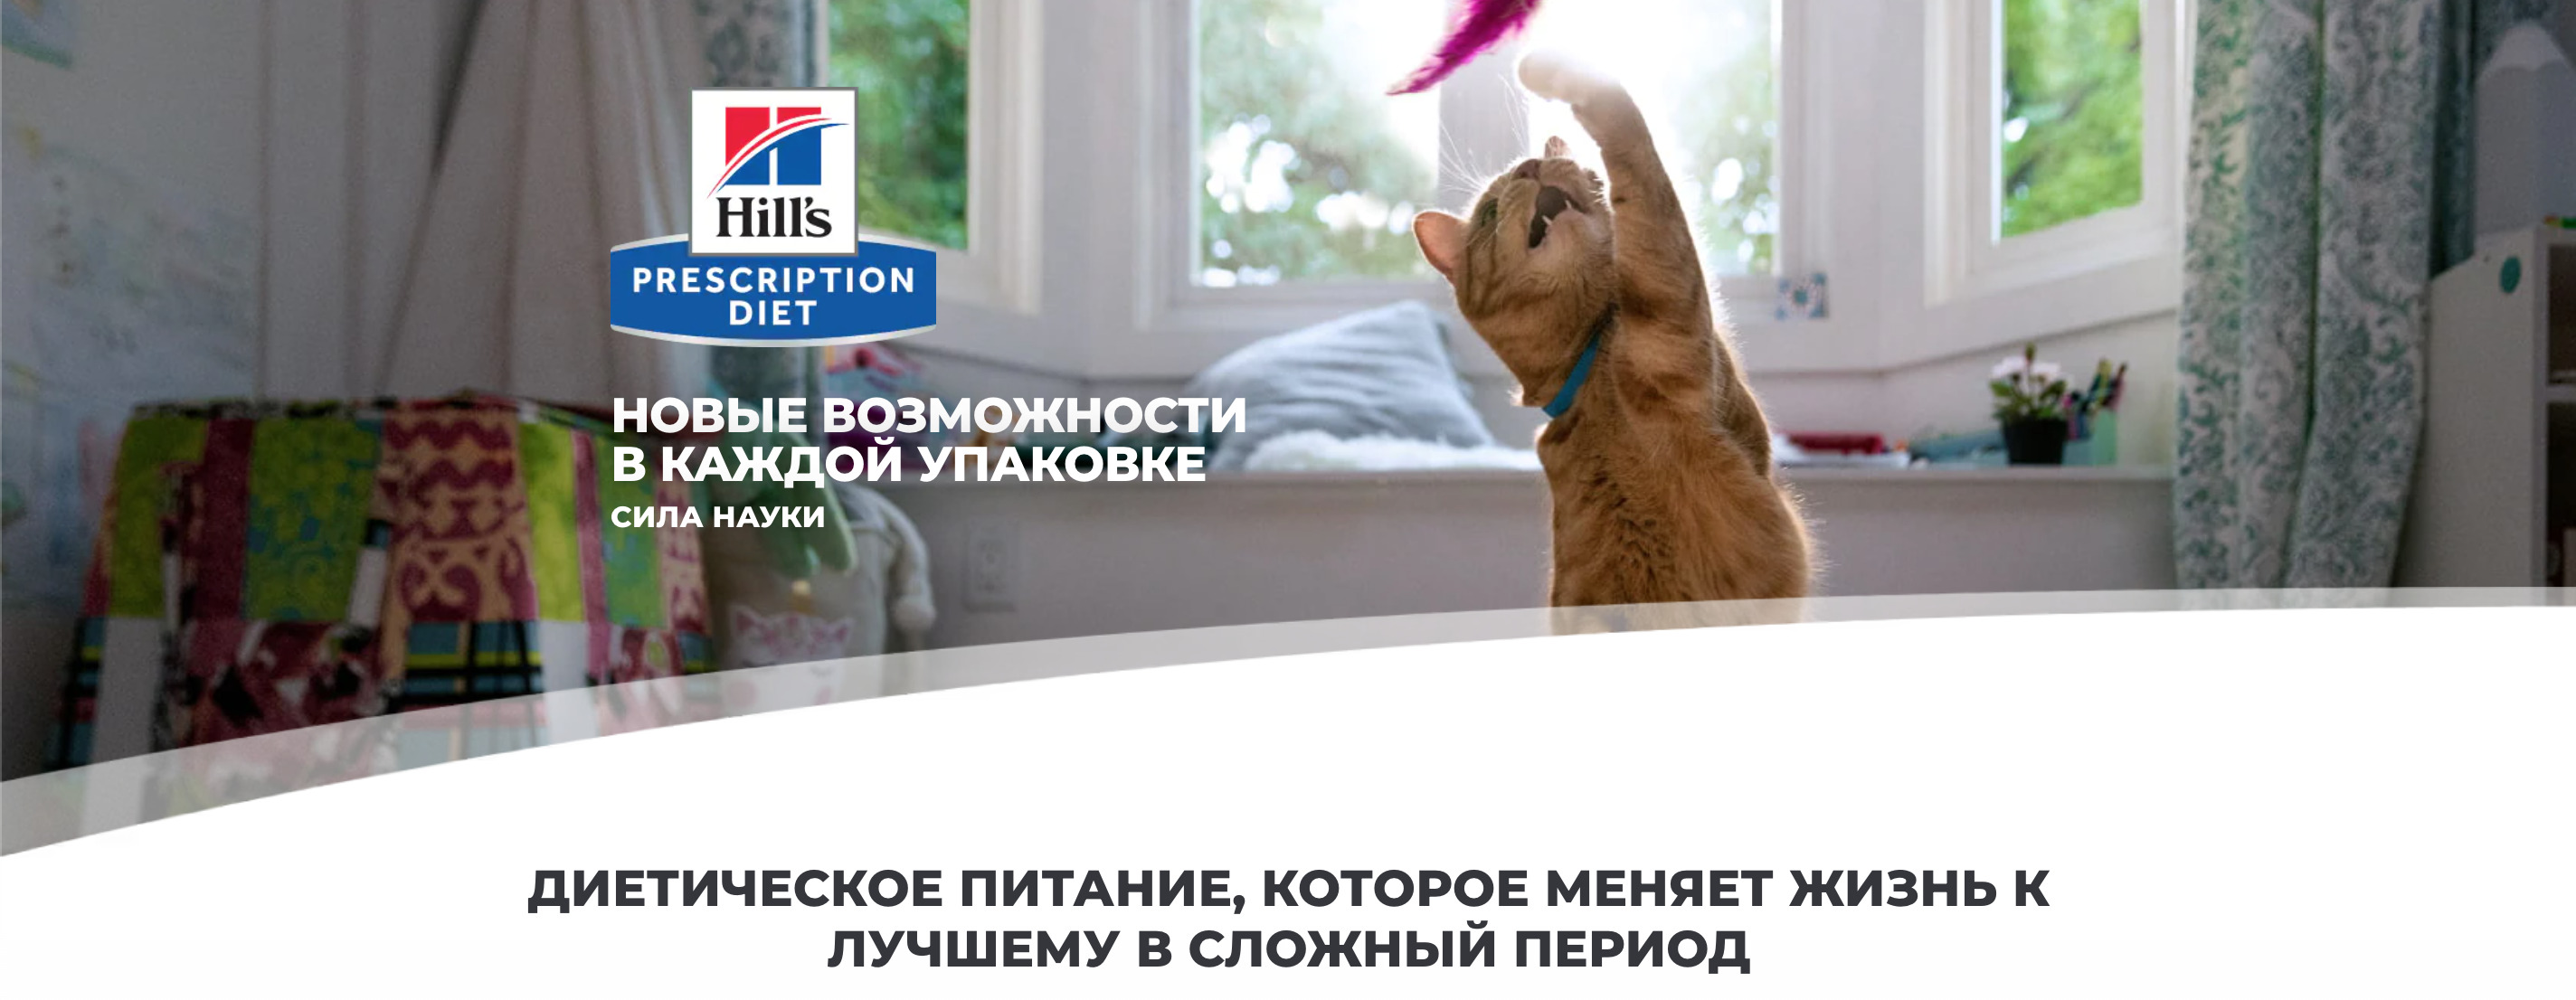 купить Влажные диетические корма для кошек Hill's Prescription Diet с бесплатной доставкой в Калининграде